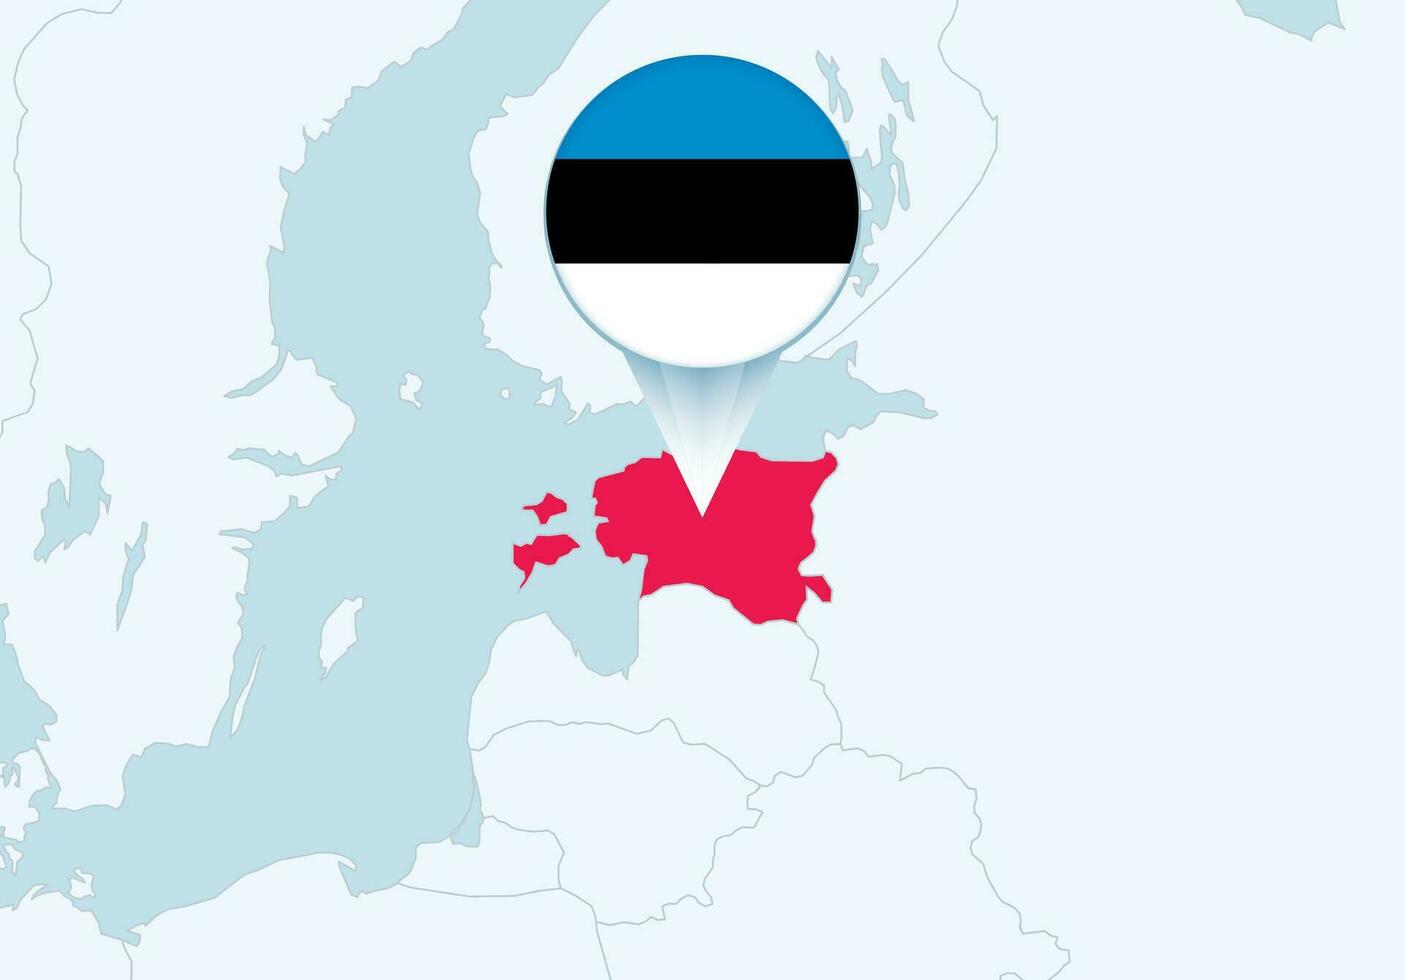 Europa con seleccionado Estonia mapa y Estonia bandera icono. vector